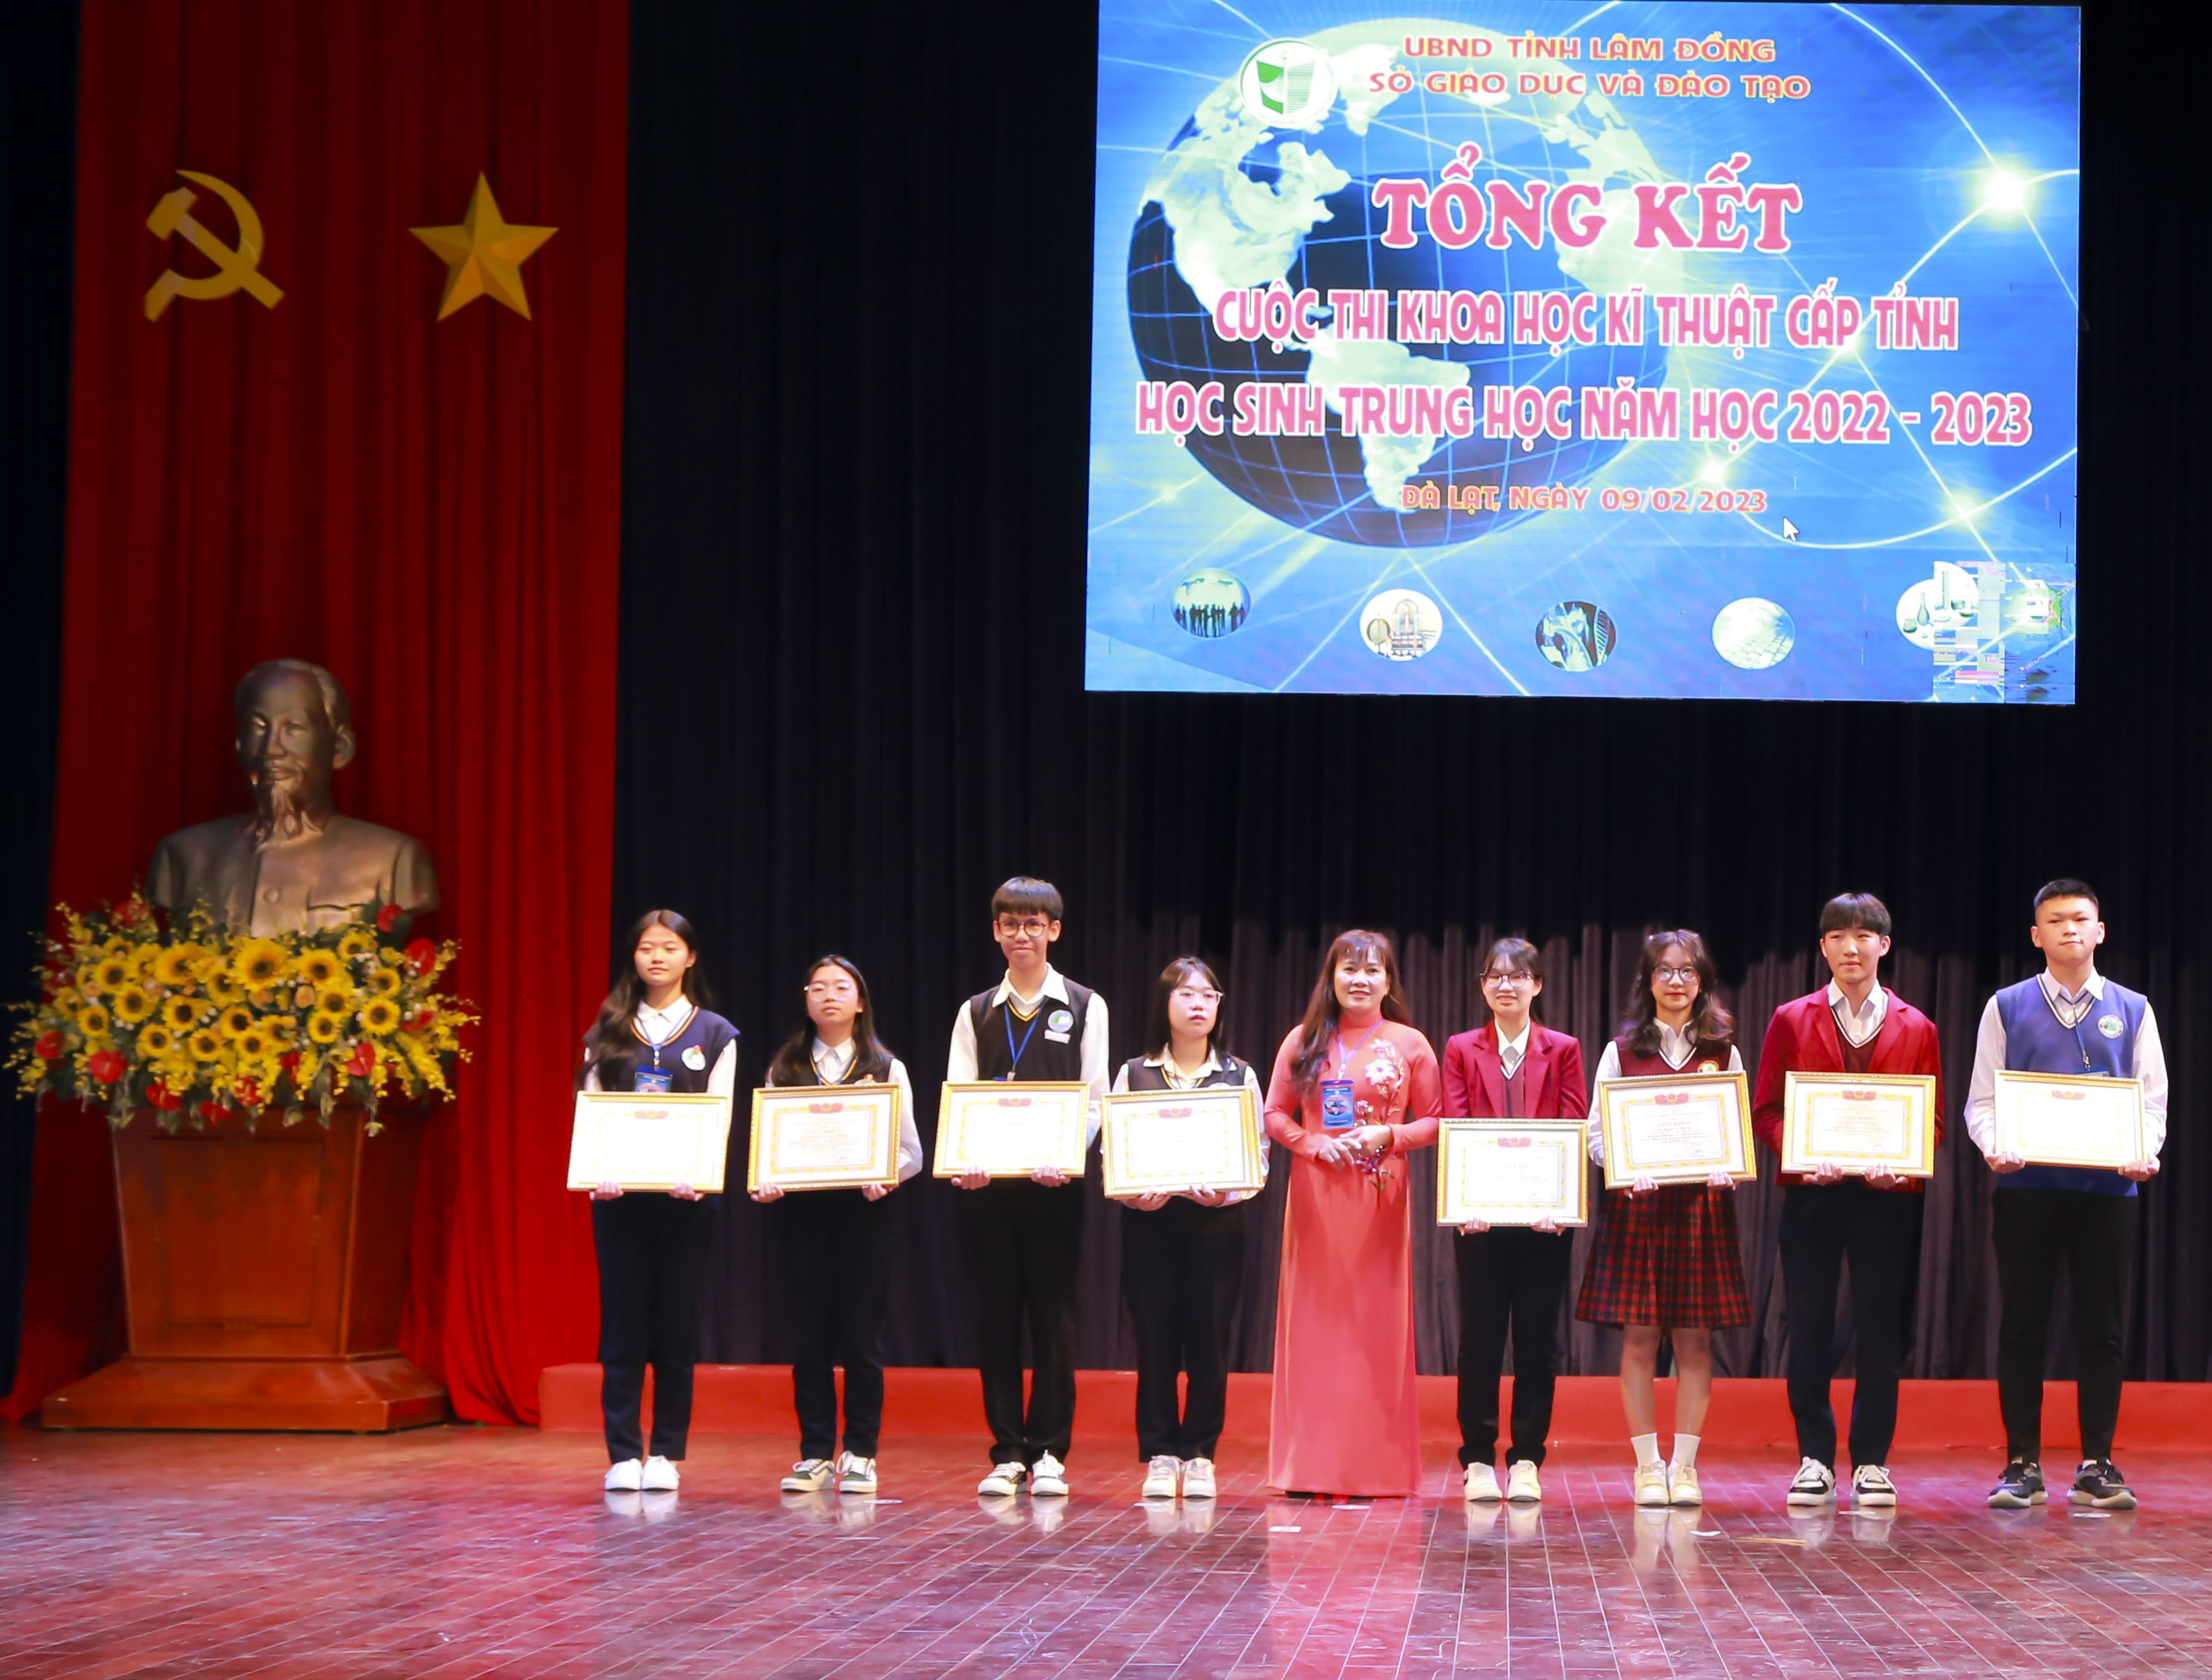 Tổng kết Cuộc thi Khoa học kỹ thuật học sinh trung học tỉnh Lâm Đồng lần thứ XV năm học 2022 – 2023